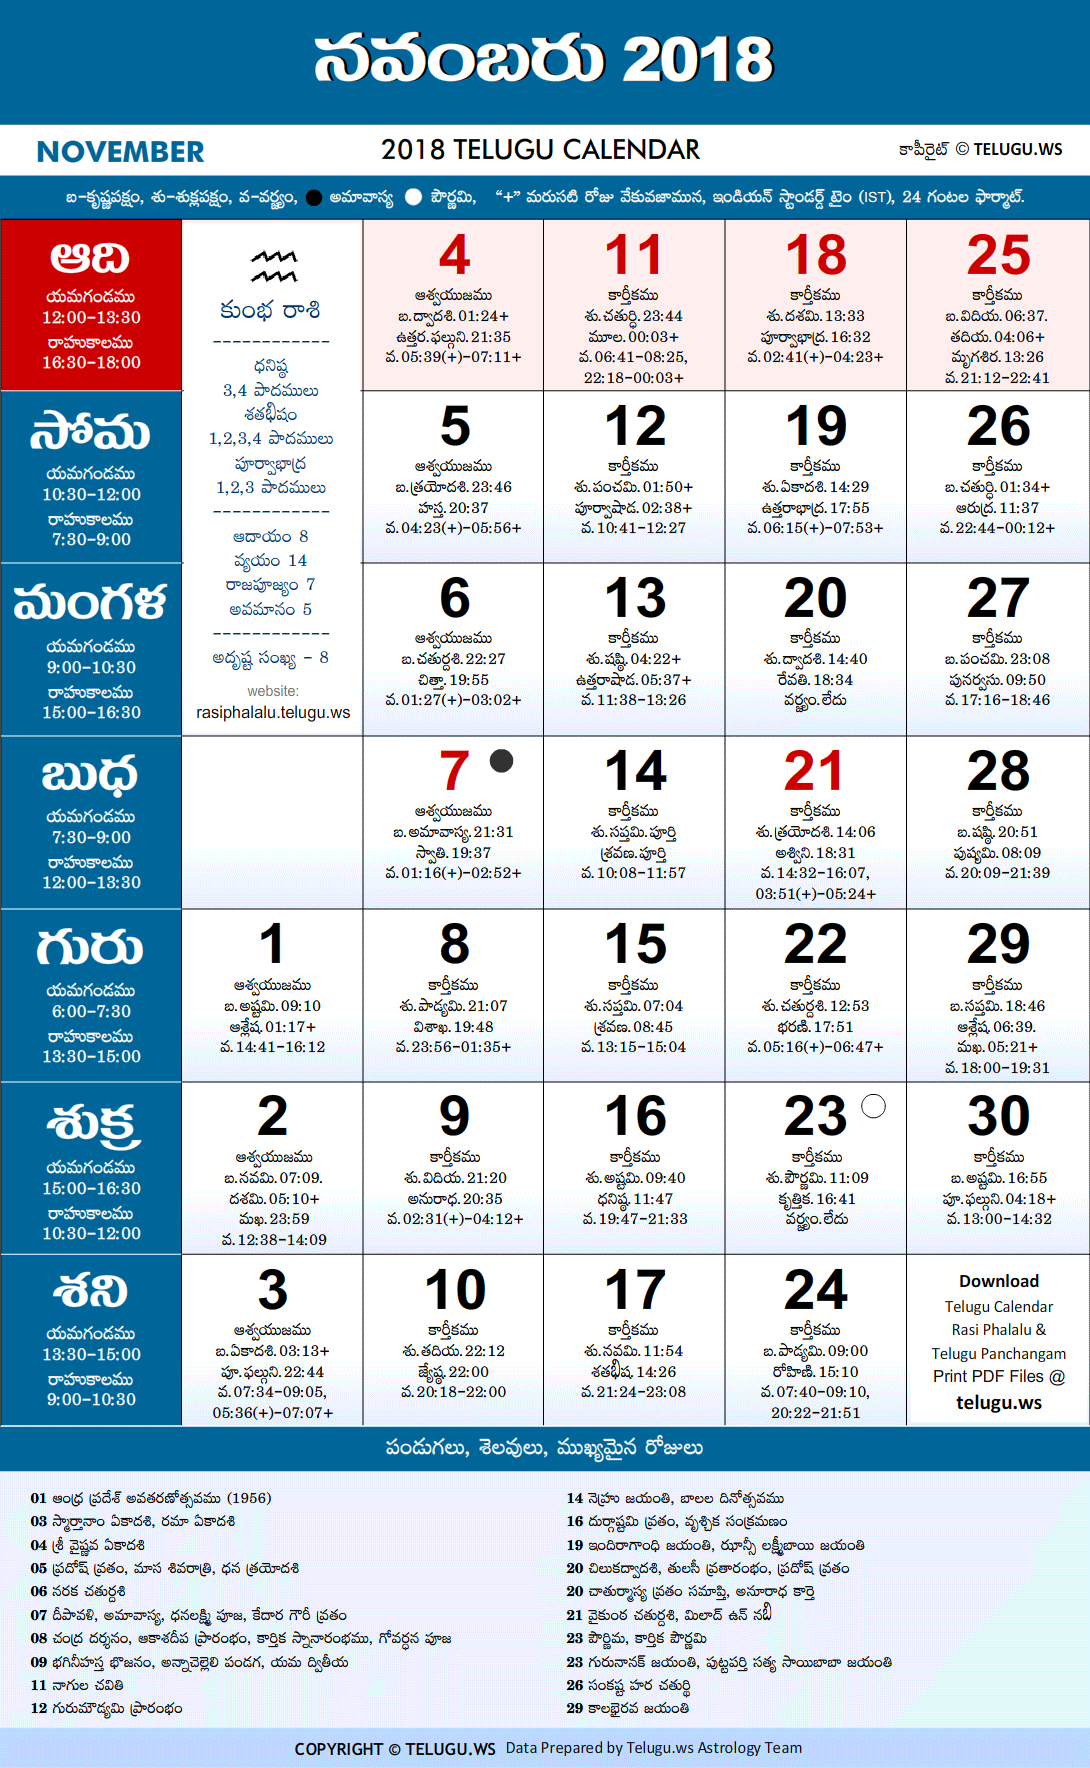 Telugu Calendar 2018 November Festivals and Holidays